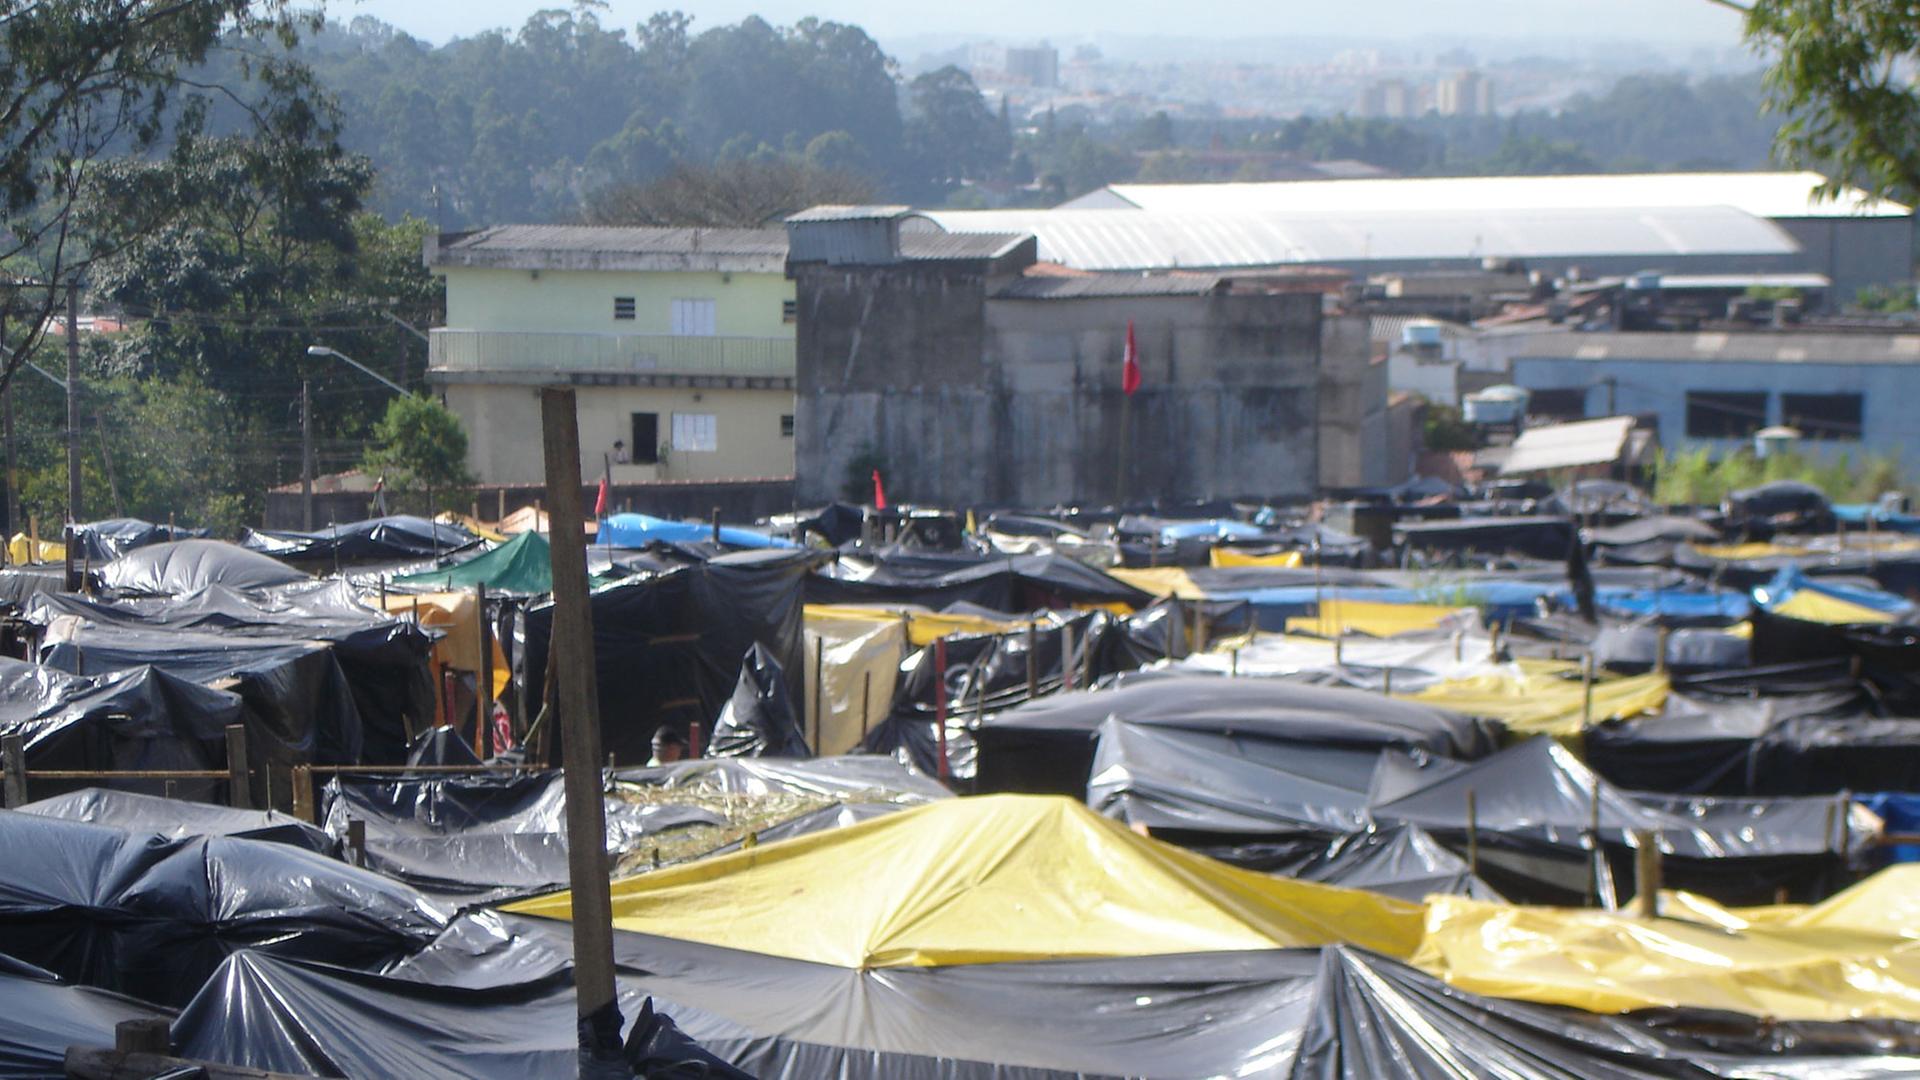 Blick auf ein Zeltlager von Menschen in Sao Paolo, die dort gegen die wegen der Fußball-Weltmeisterschaft gestiegenen Mieten und Hauspreise demonstrieren.